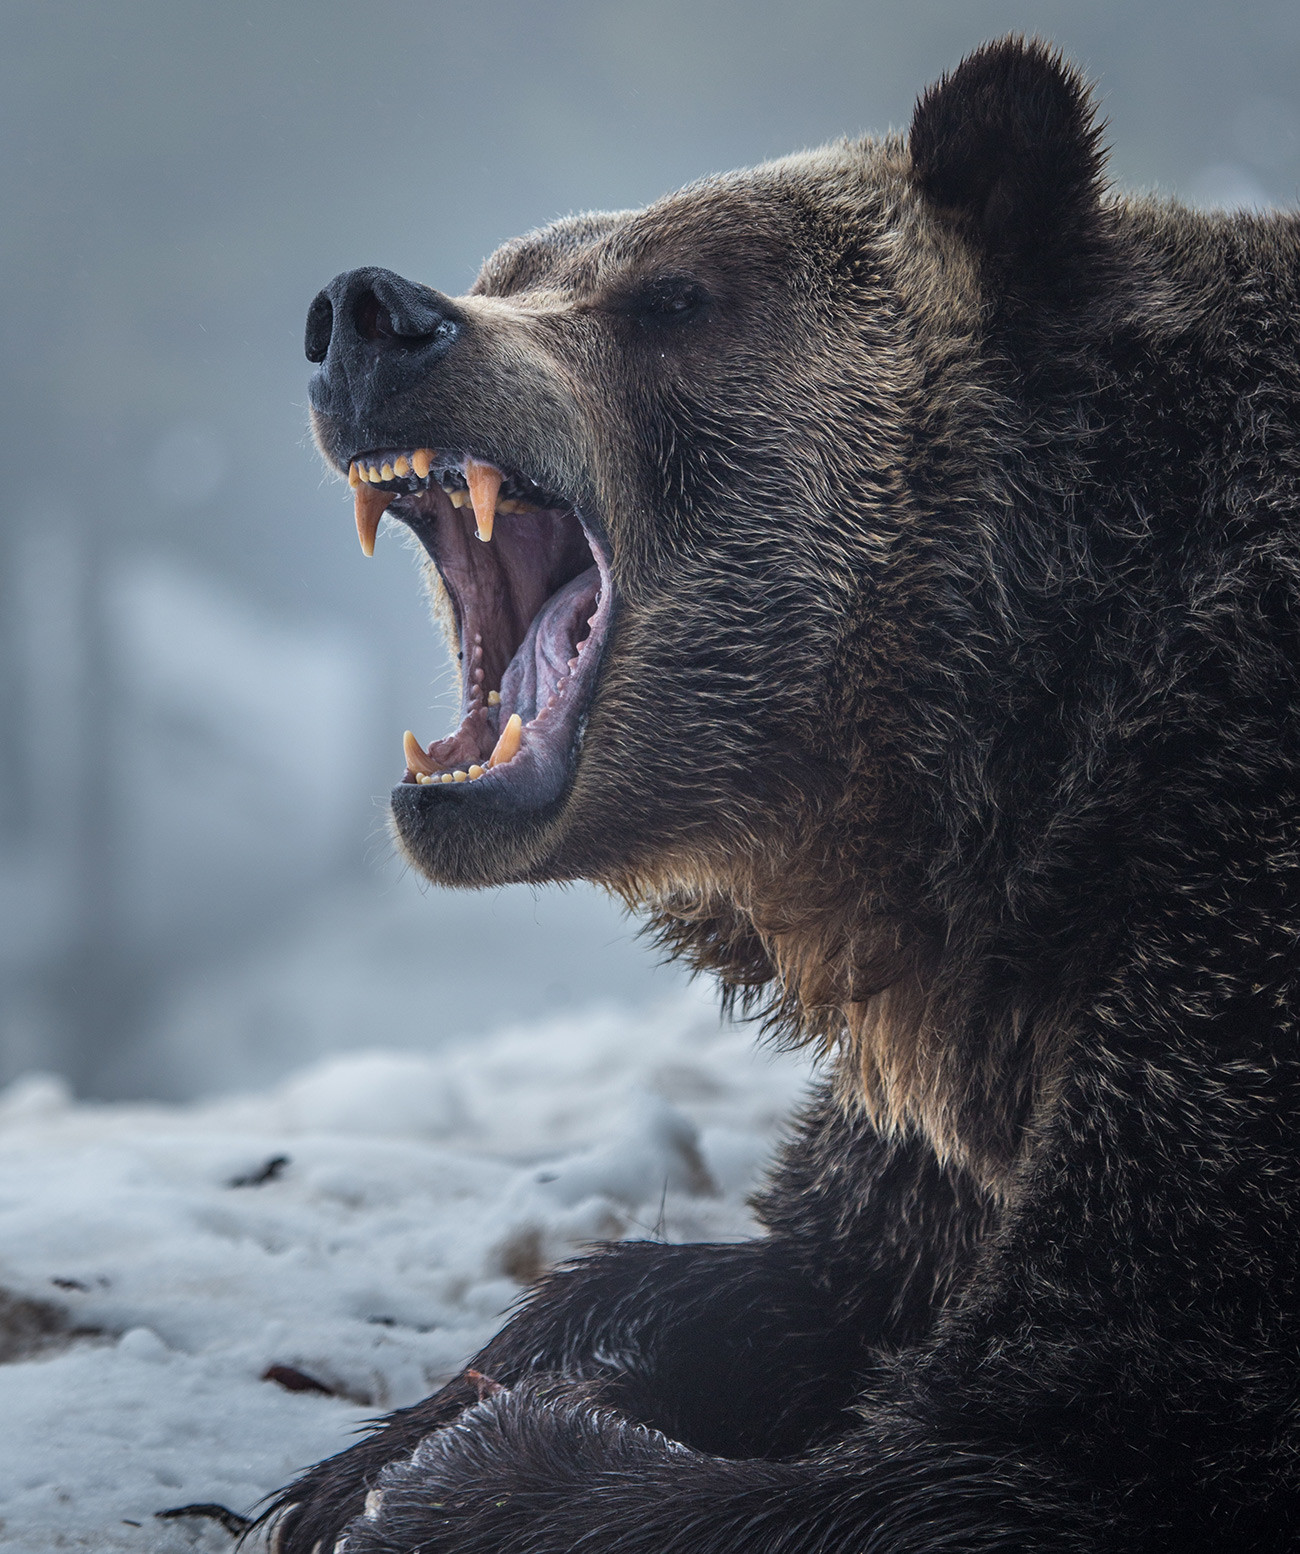 Beruang grizzly memiliki rahang yang kuat.